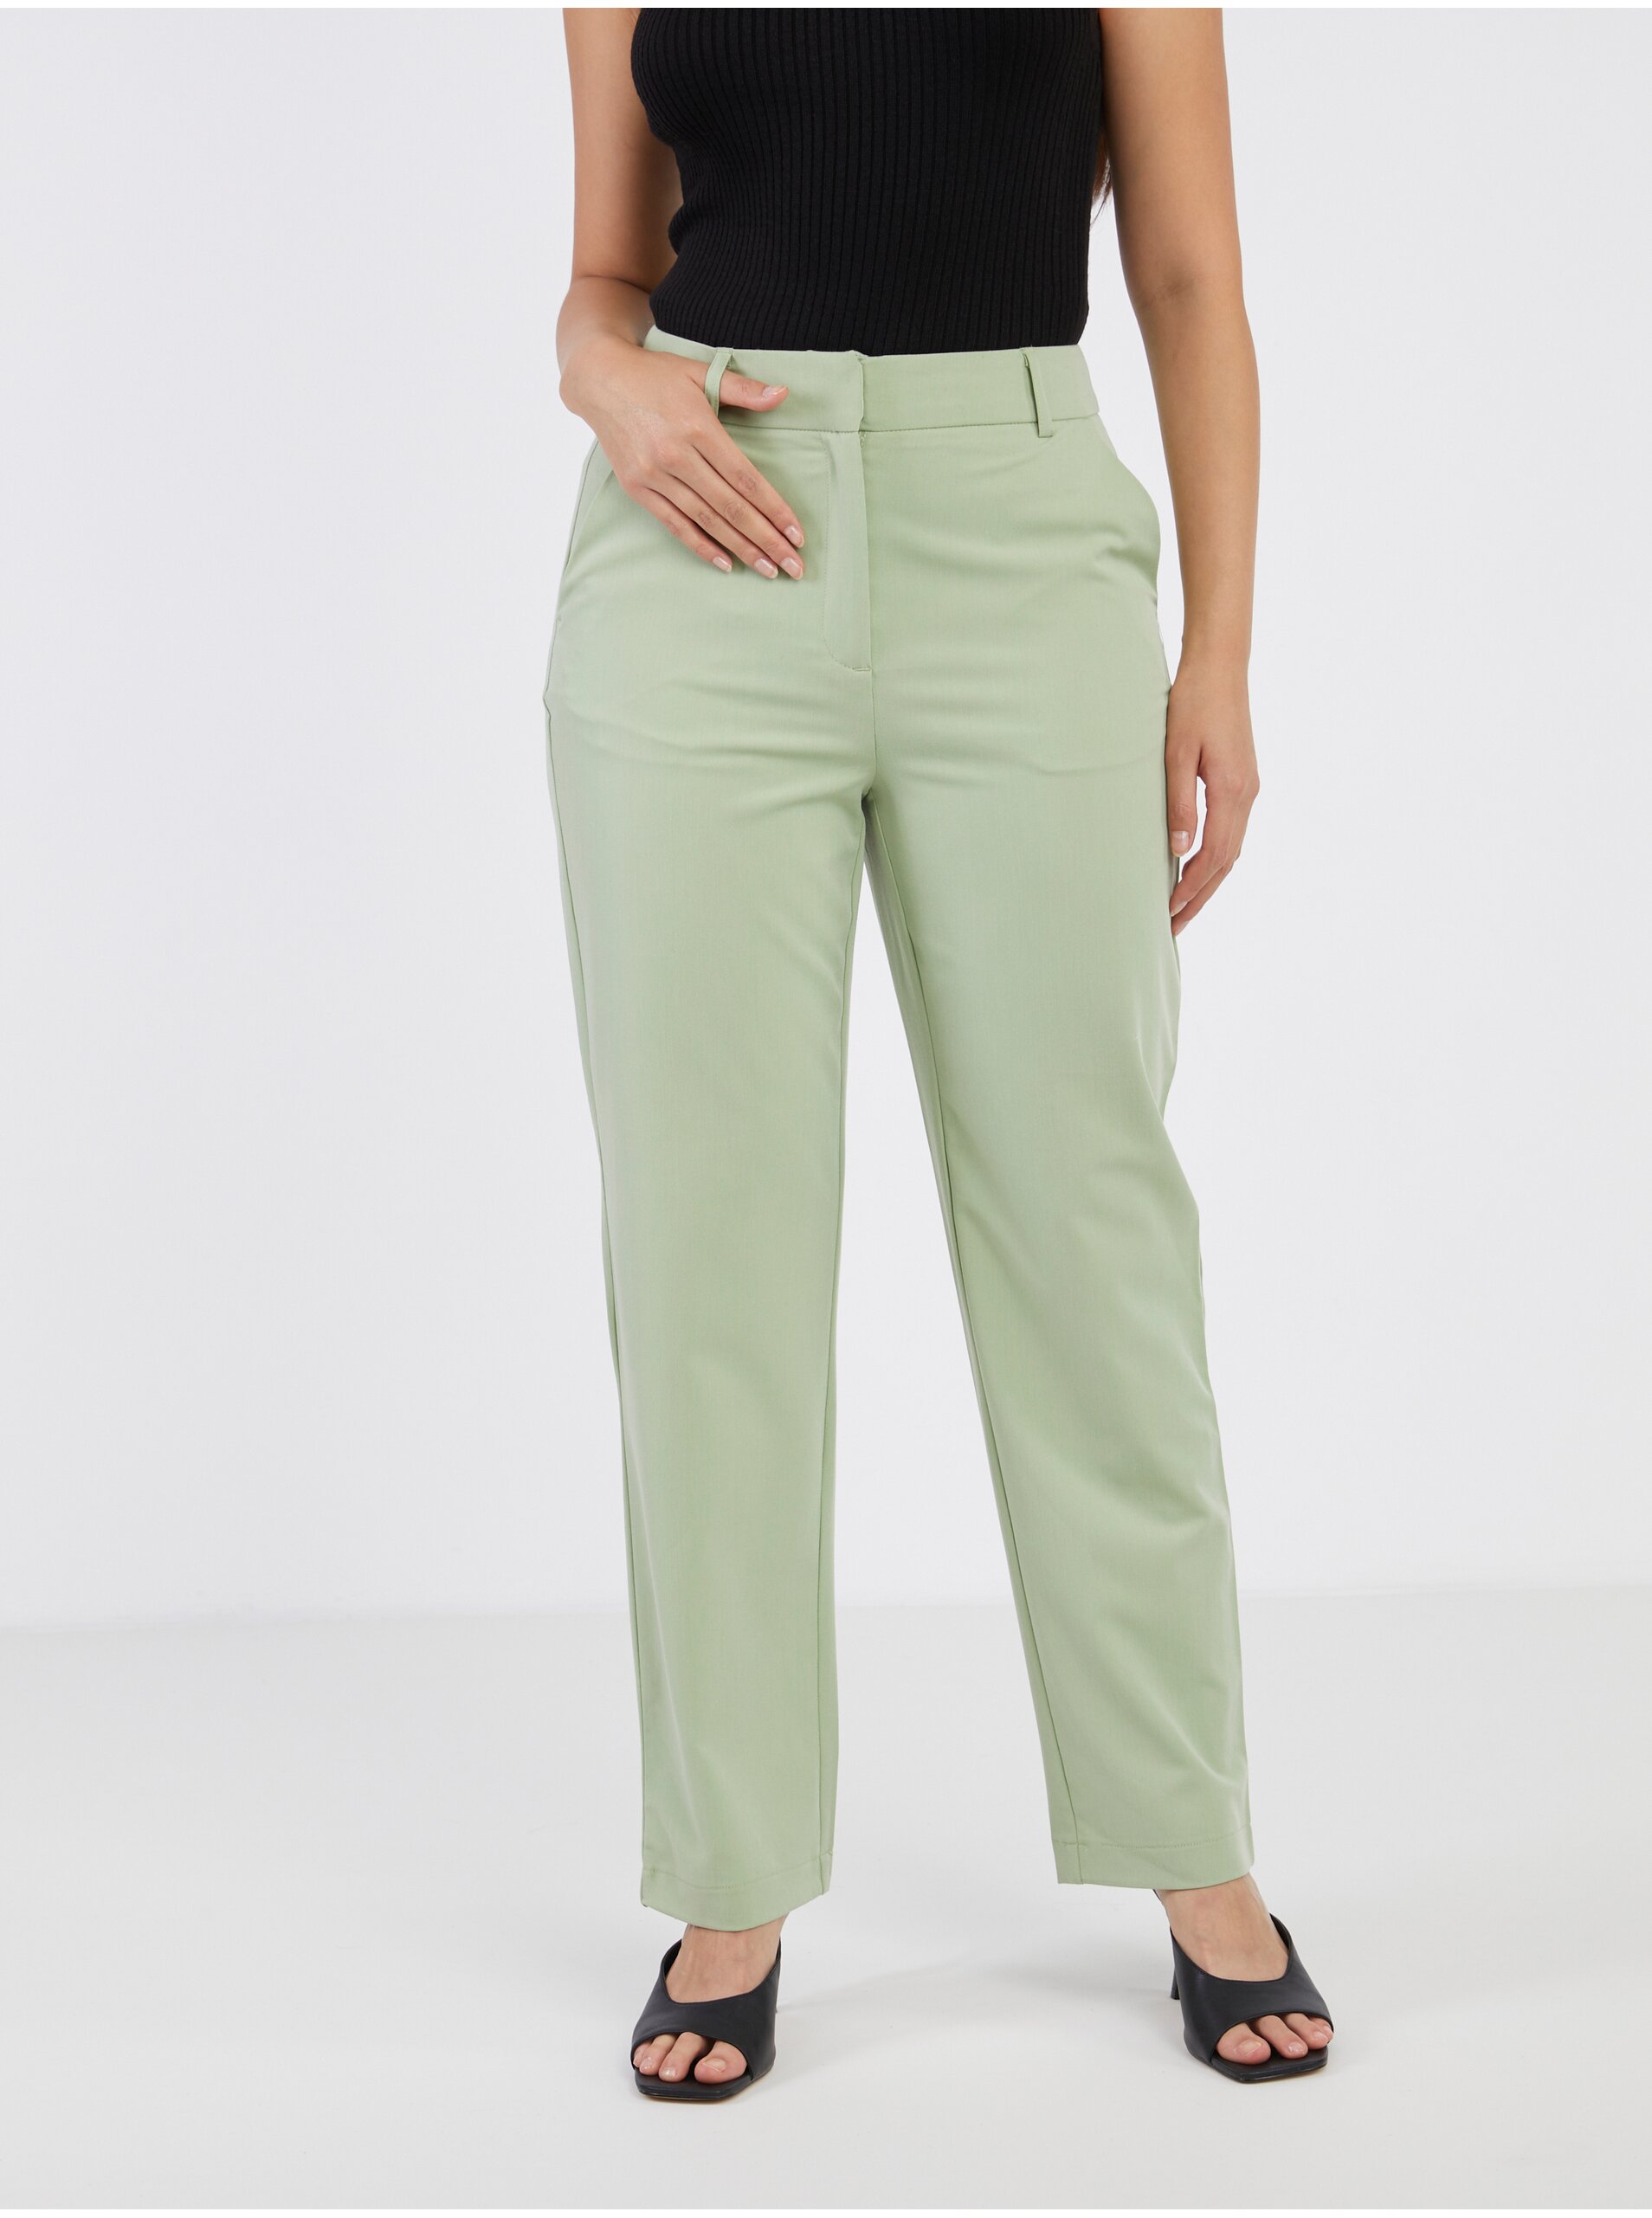 E-shop Světle zelené dámské zkrácené kalhoty VERO MODA Zelda